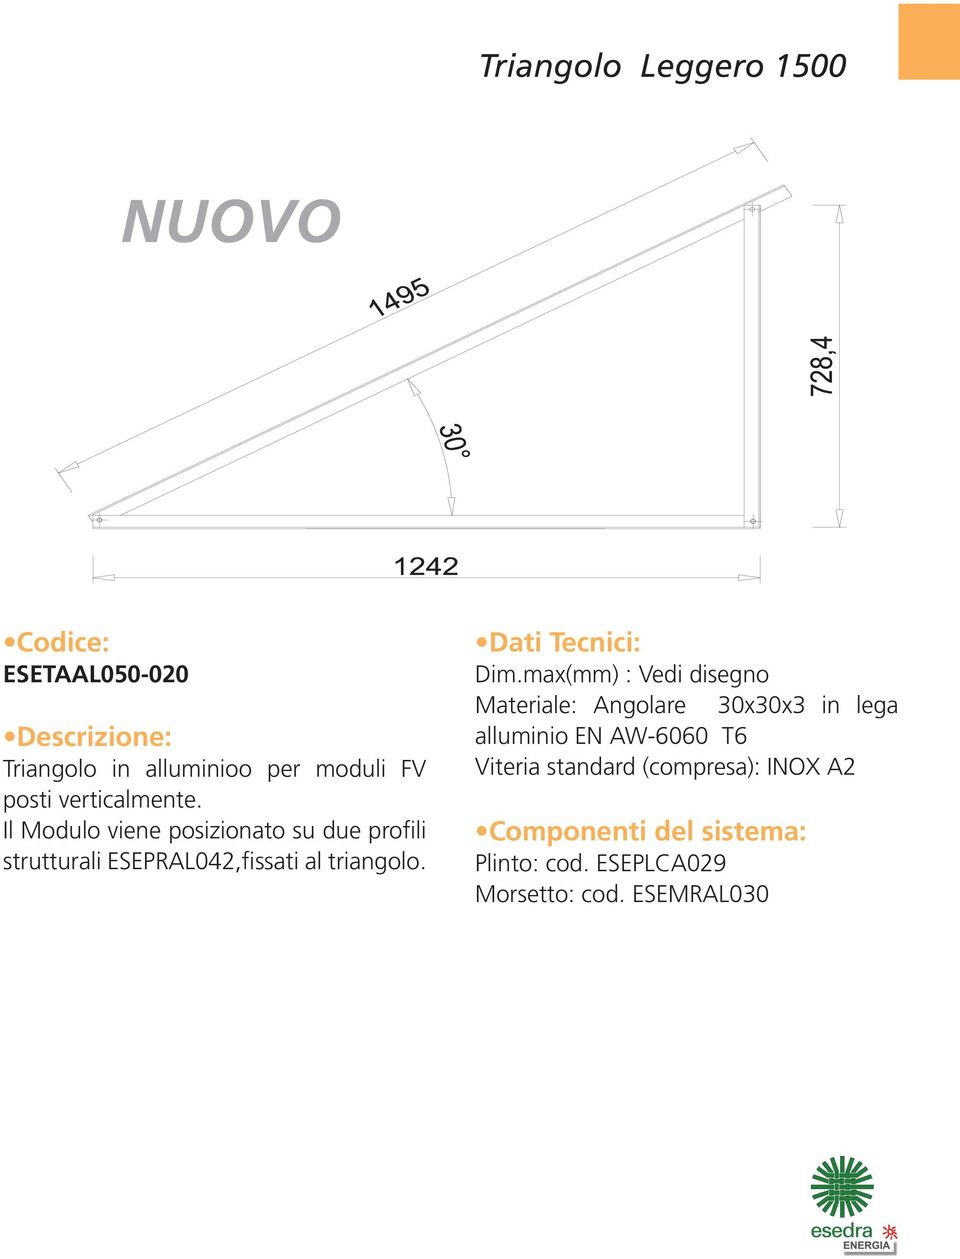 max(mm) : Vedi disegno Materiale: Angolare 30x30x3 in lega alluminio EN AW-6060 T6 Viteria